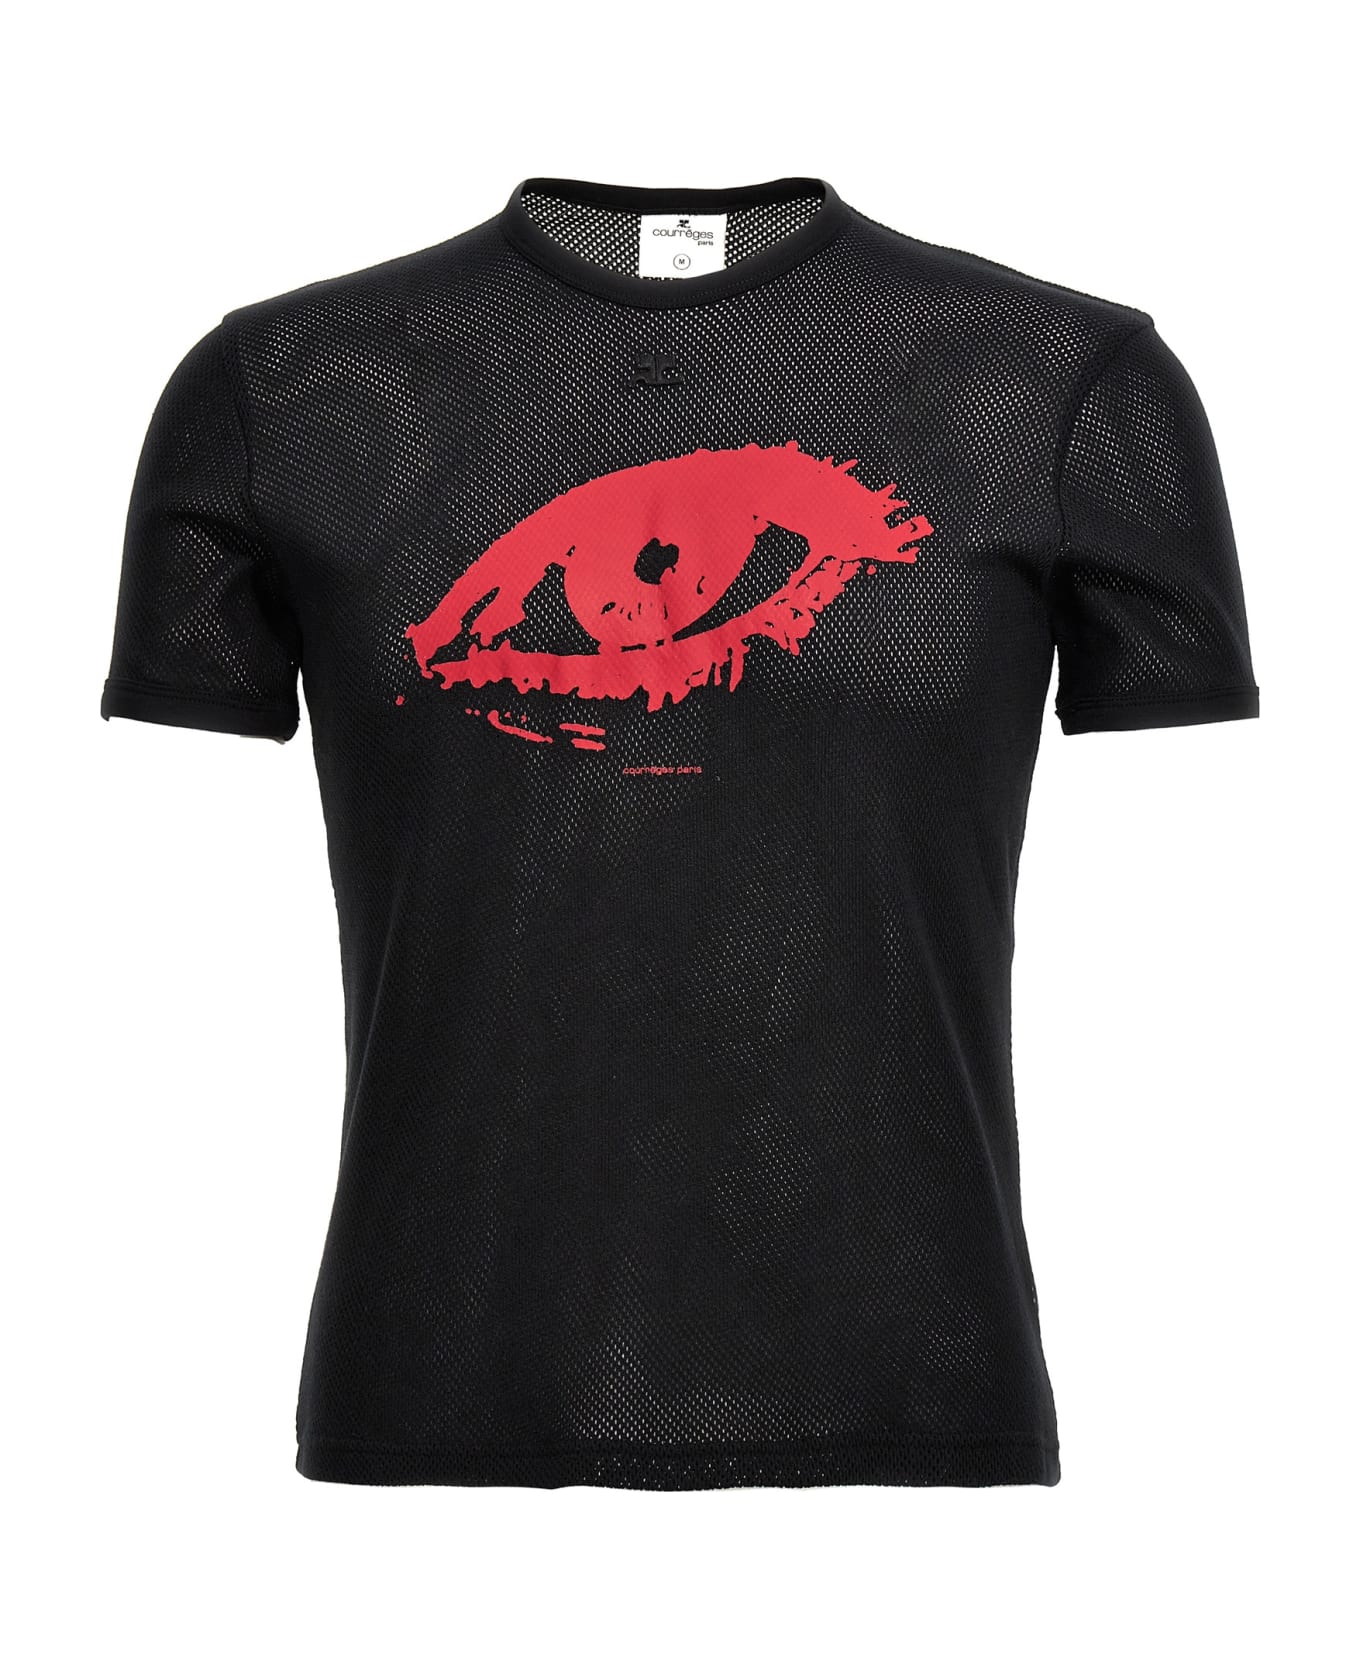 Courrèges 'resistance Contrast Mesh' T-shirt - Black  